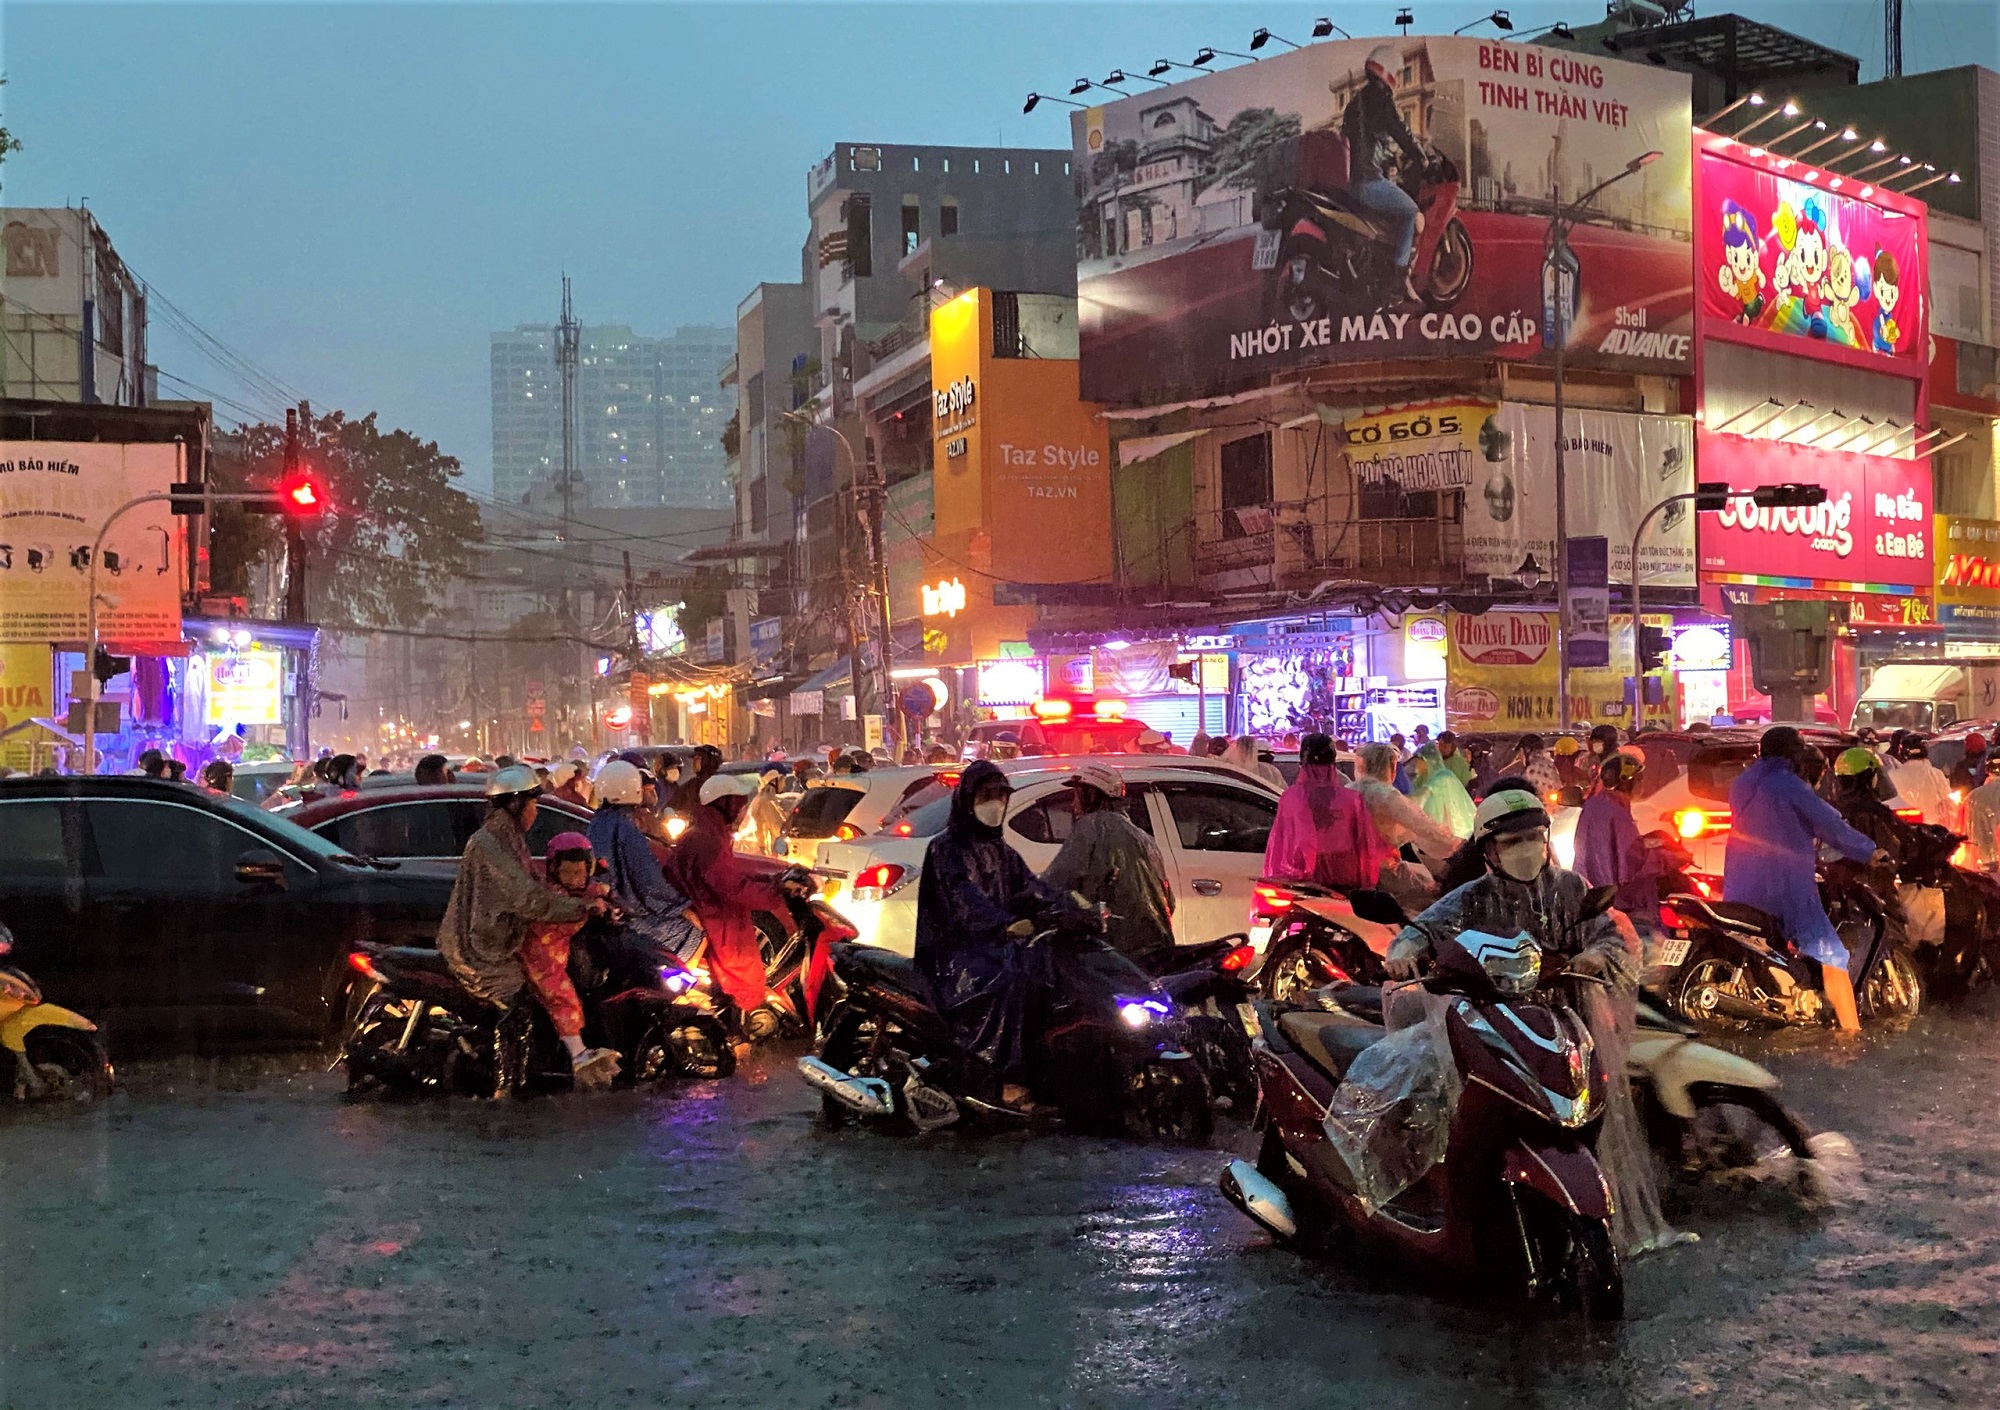 Clip, ảnh: Đường phố Đà Nẵng thành sông sau mưa, người dân dắt xe bì bõm về nhà - Ảnh 18.